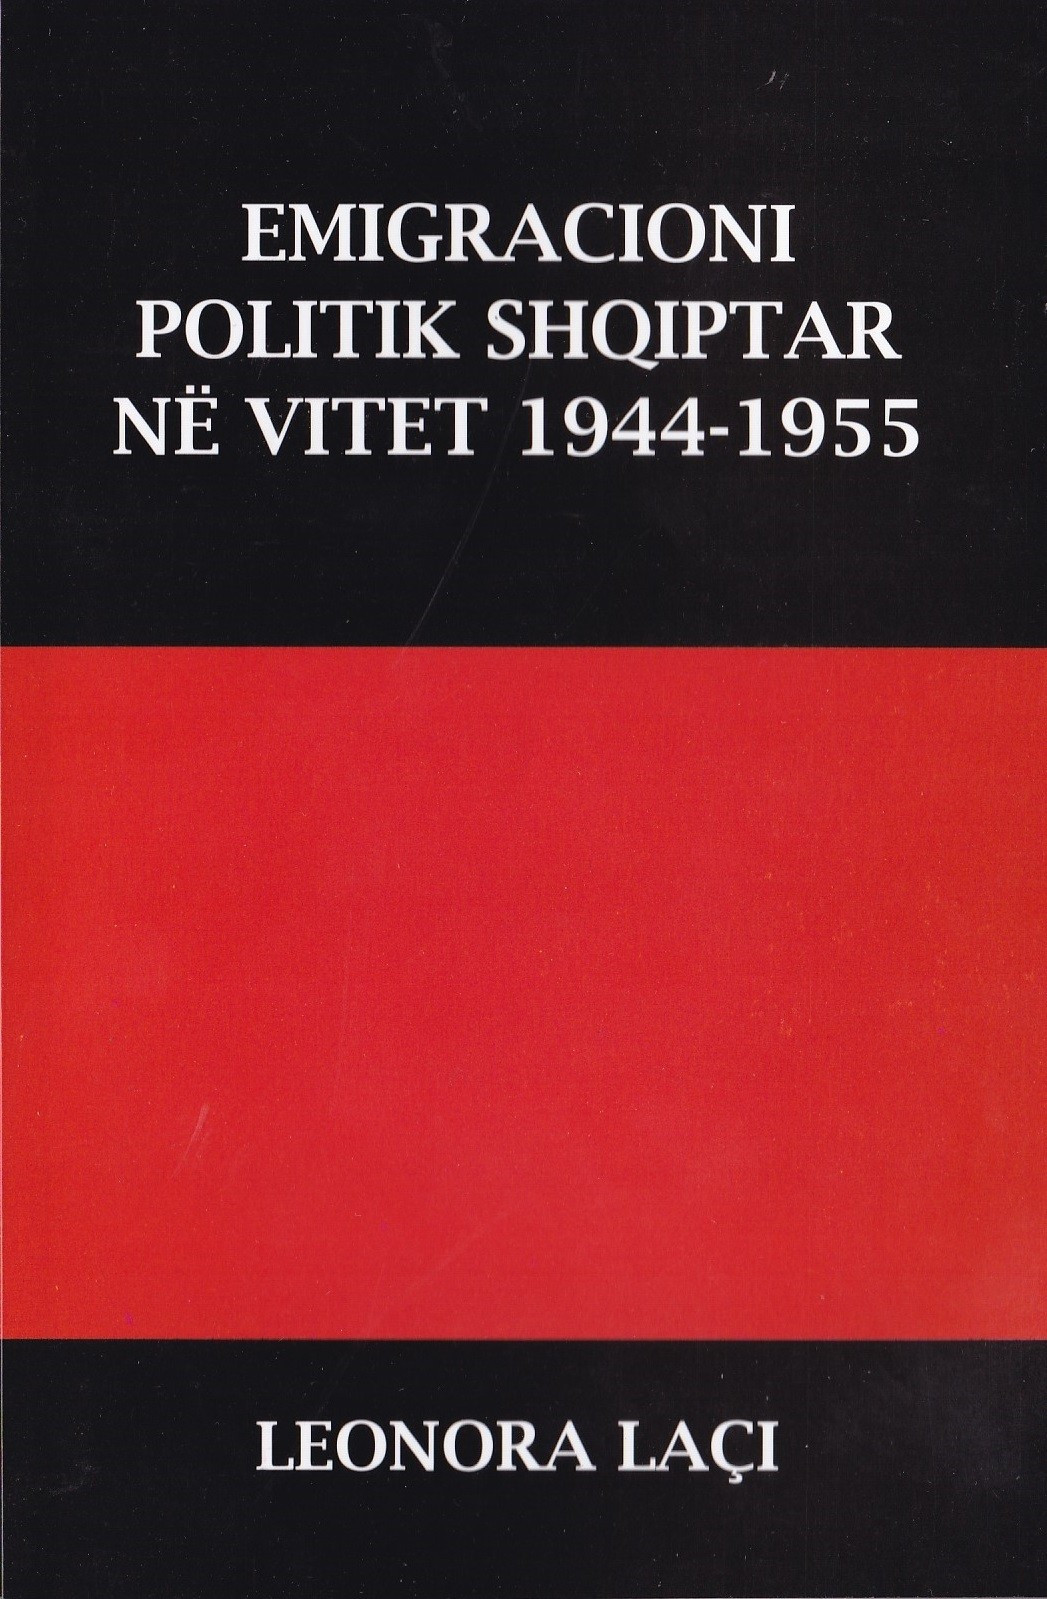 Emigracioni Politik Shqiptar ne Vitet 1944-1955